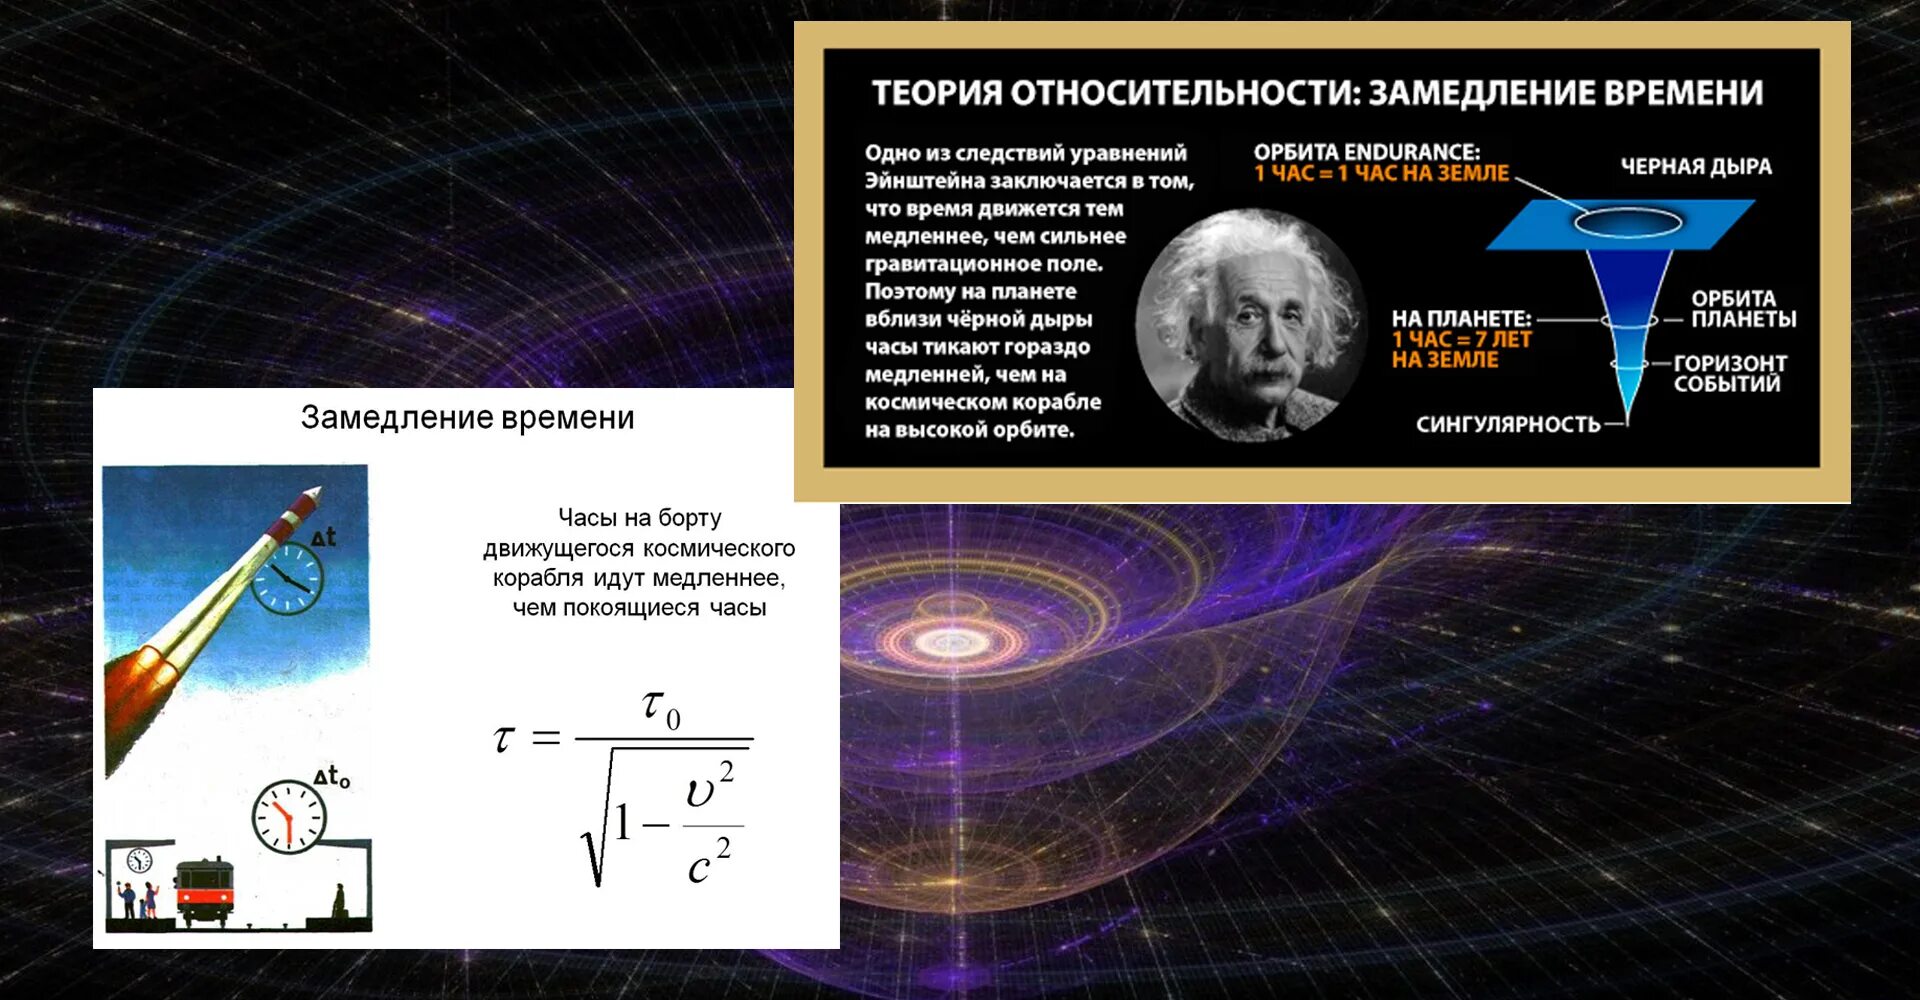 Теория относительности Эйнштейна. Общая теория относительности Ньютона. Теория относительности Эйнштейна пространство. Замедление времени в специальной теории относительности.